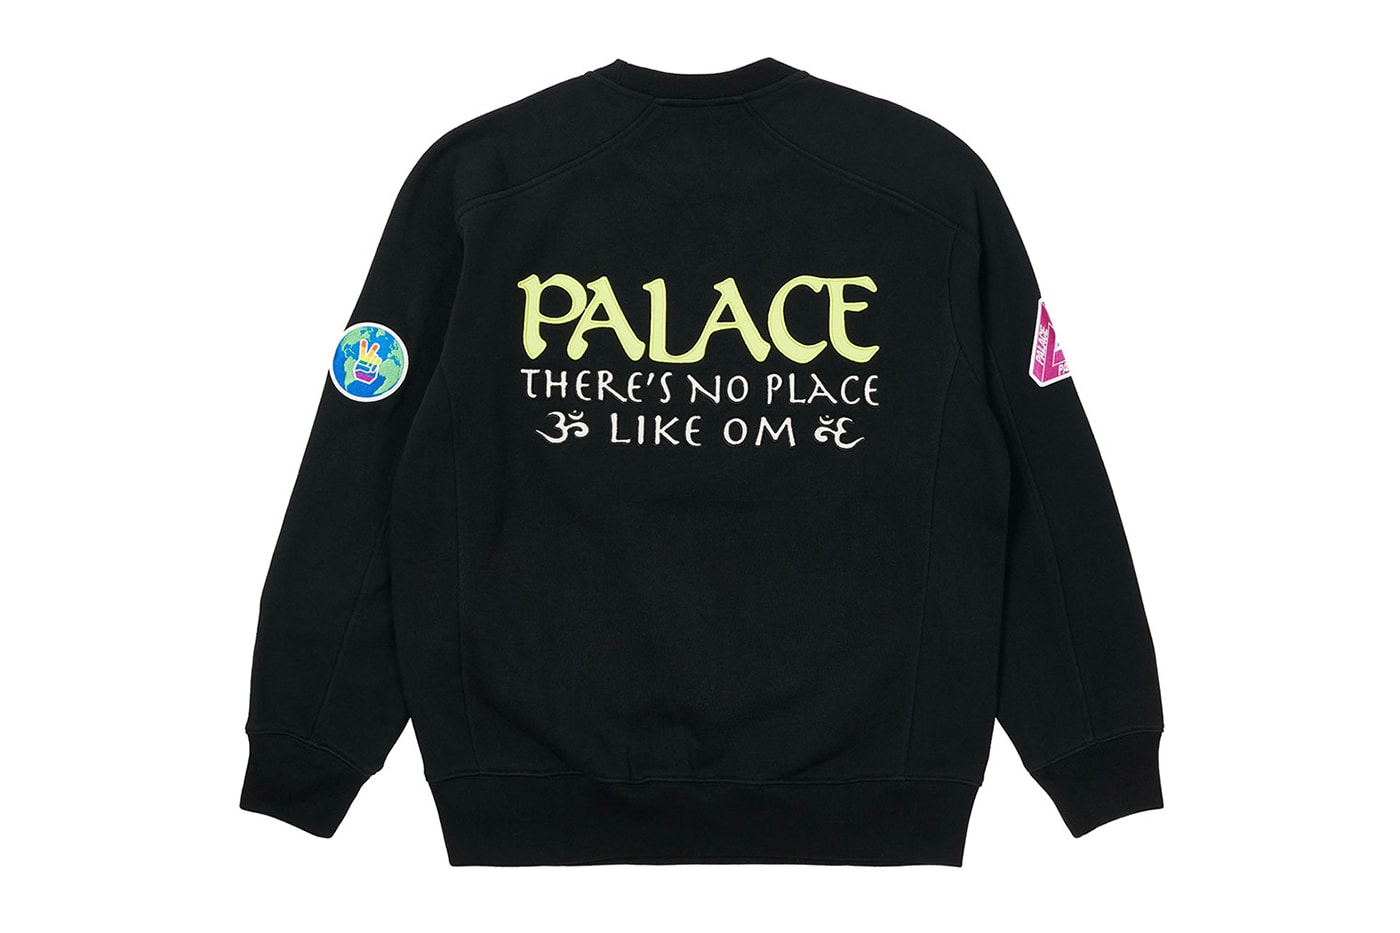 パレス PALACE SKATEBOARDS 2021年夏コレクション発売アイテム一覧 - ジャケット&スウェット類 